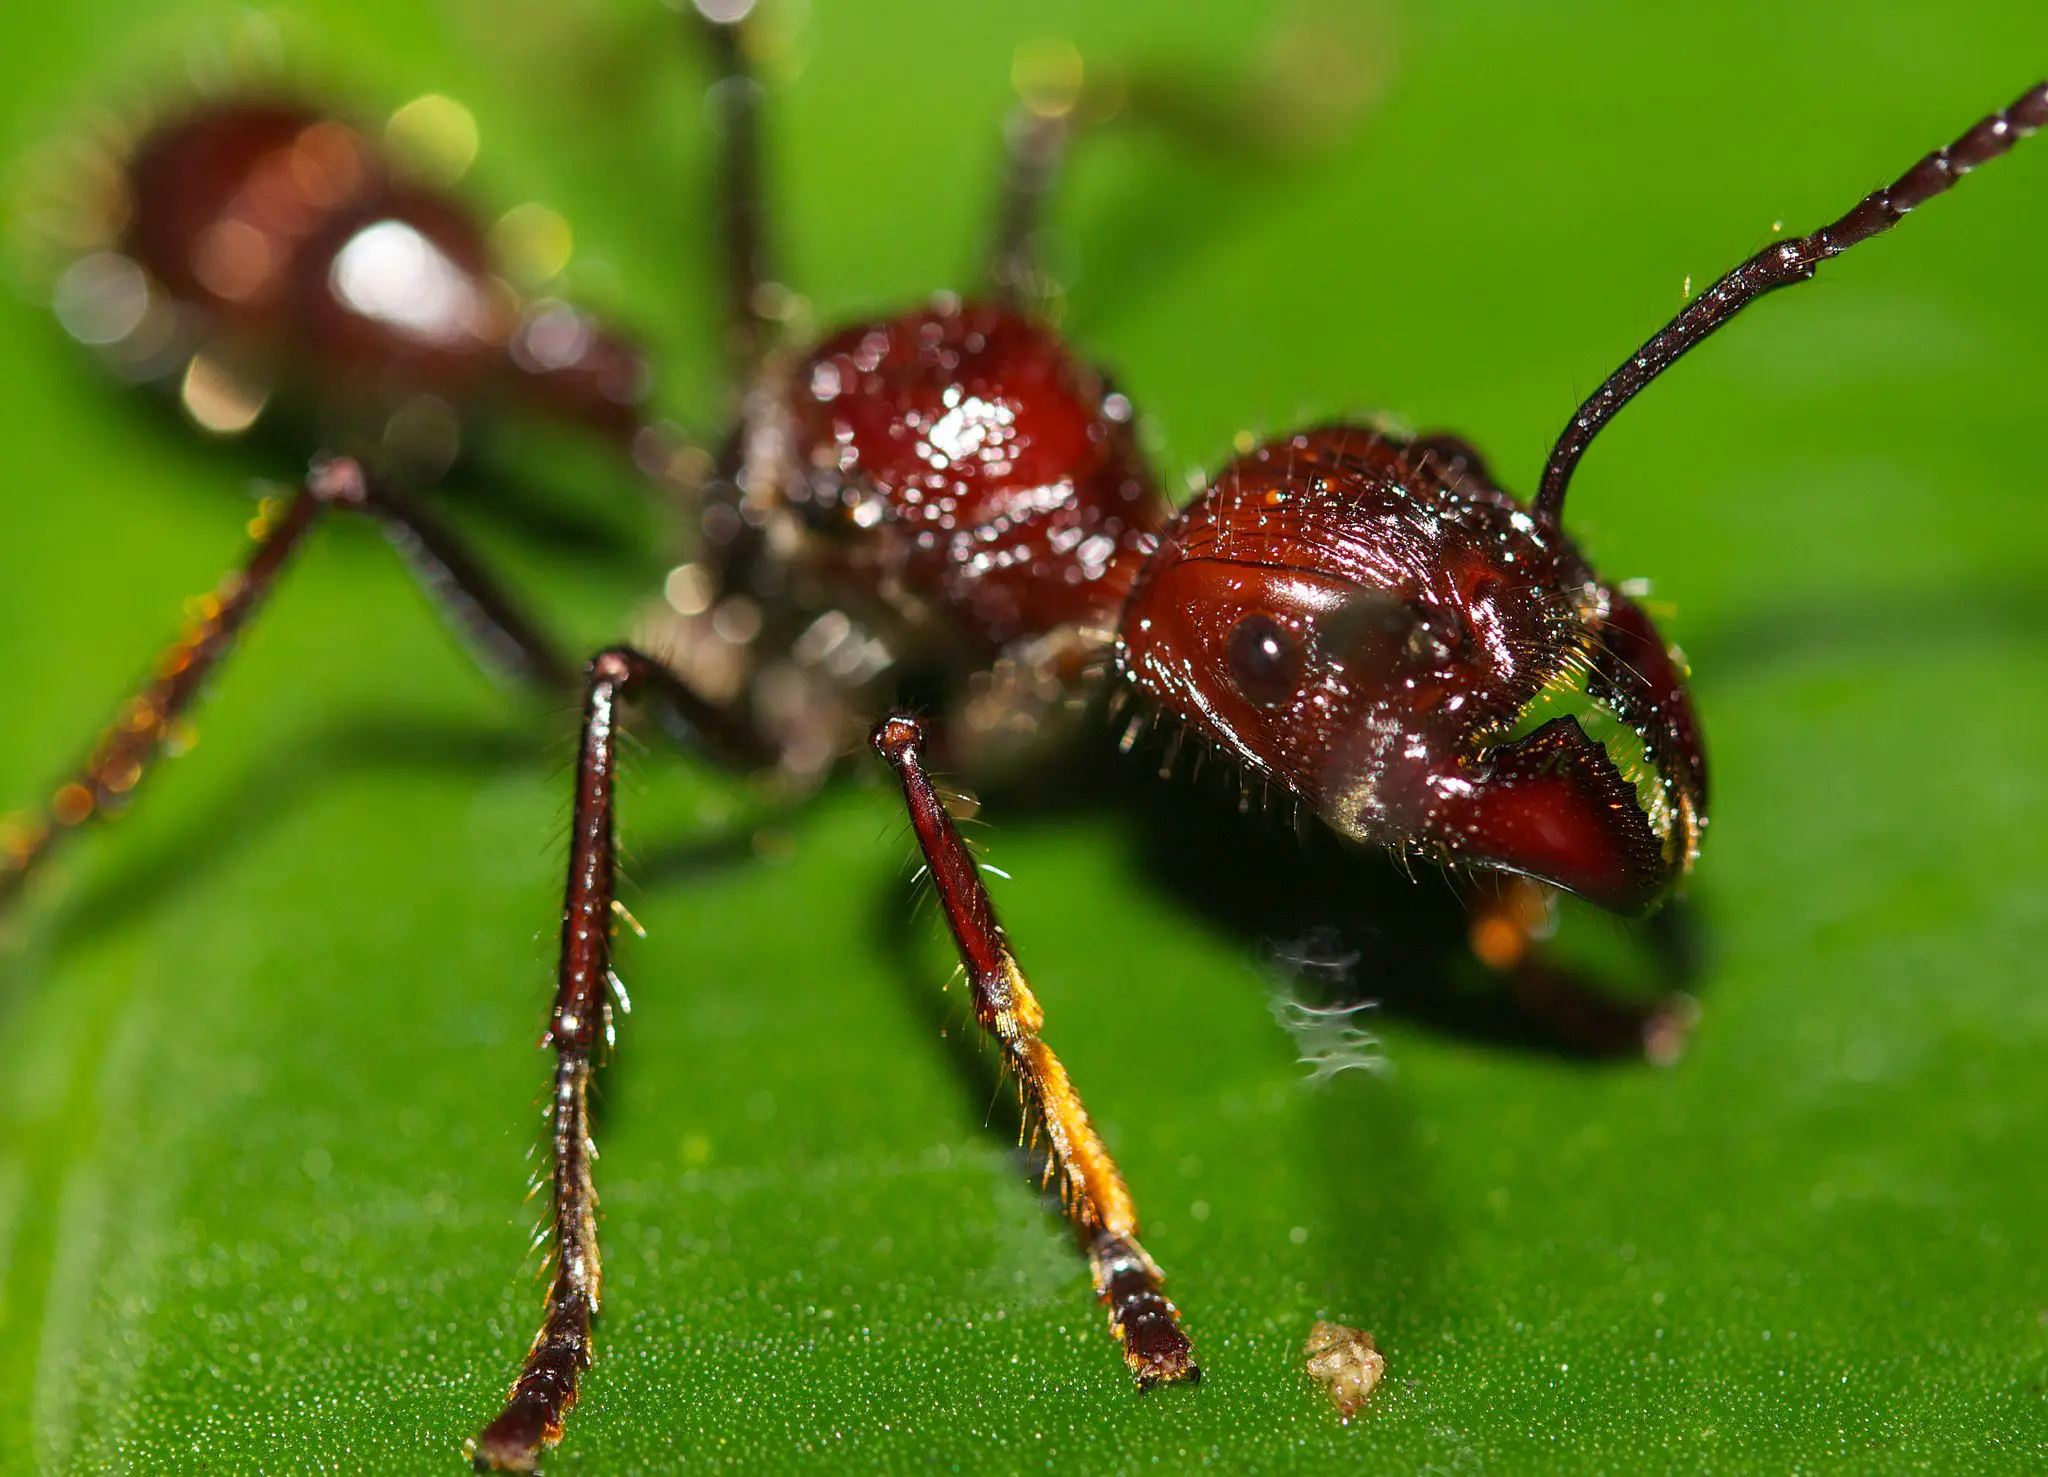 Hormiga bala: El insecto que tiene la picadura más fuerte del mundo -Revista Interesante